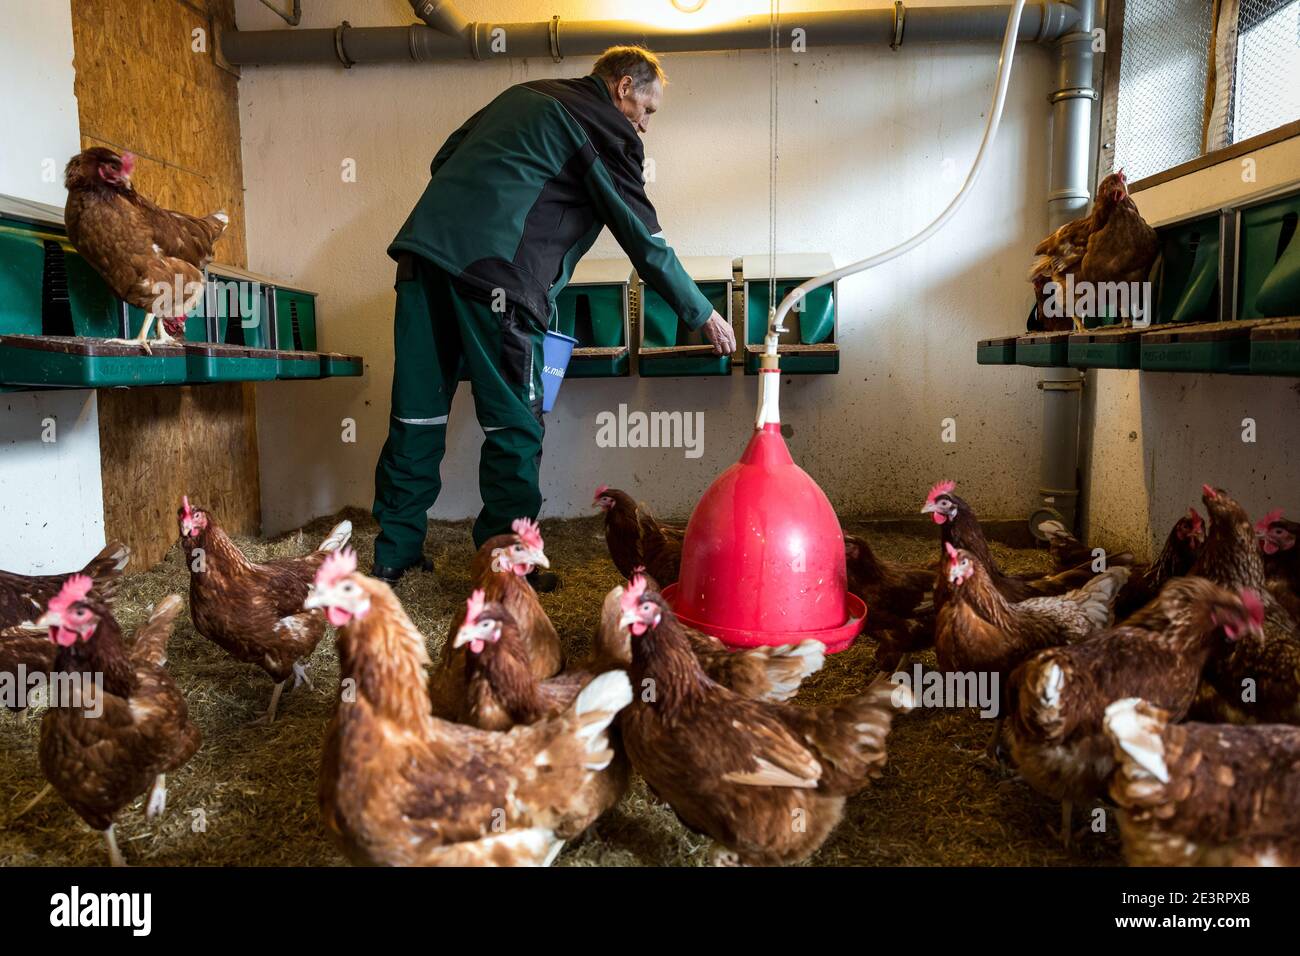 Karl Heinz Degen 70, qui che lavora nella gabbia di pollo, vive nella casa senior della fattoria di Eiffel a Marienrachdorf, in Rheinland-Pfalz Germania, dove gli anziani possono anche entrare in contatto con gli animali o addirittura lavorare nella fattoria stessa. Foto Stock